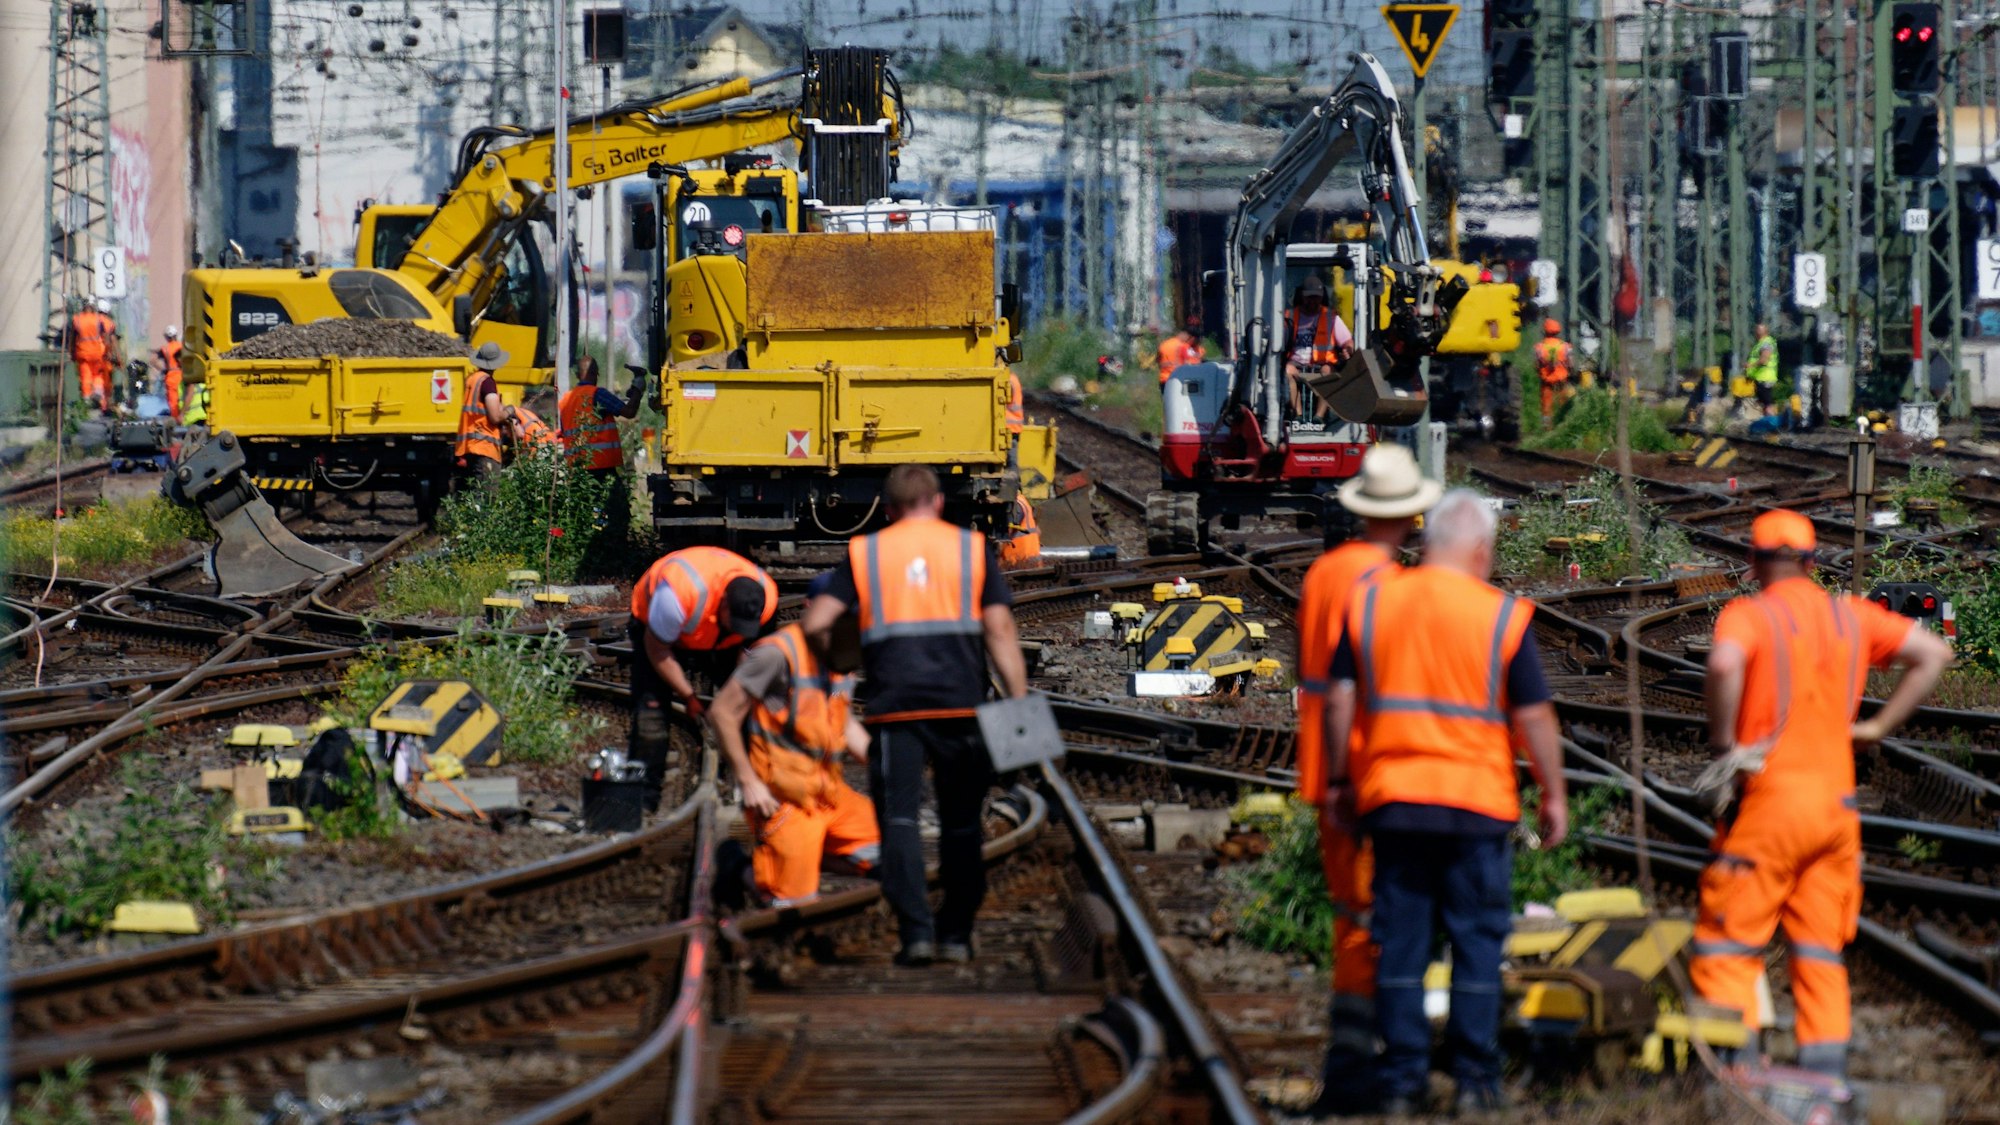 Mitarbeiter der Deutschen Bahn arbeiten an einem Gleis, Kollegen stehen daneben. Auf mehreren Gleisen stehen Maschinen.